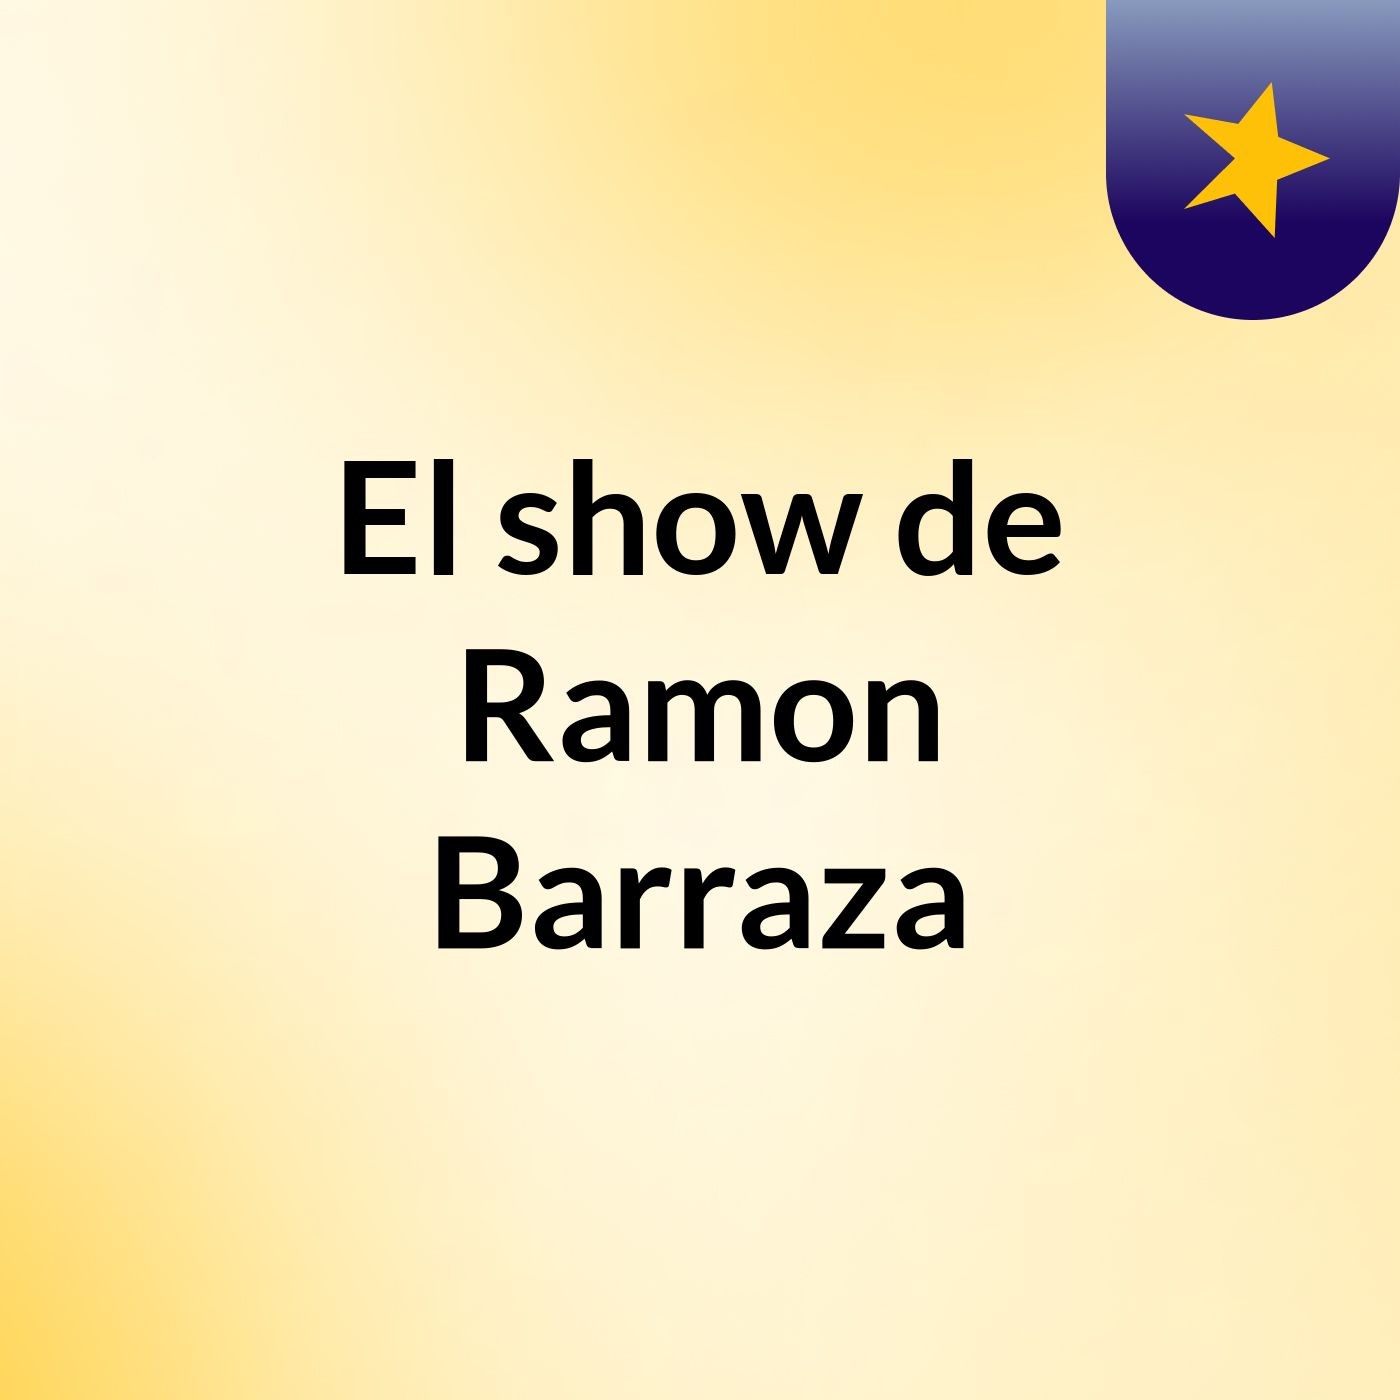 El show de Ramon Barraza